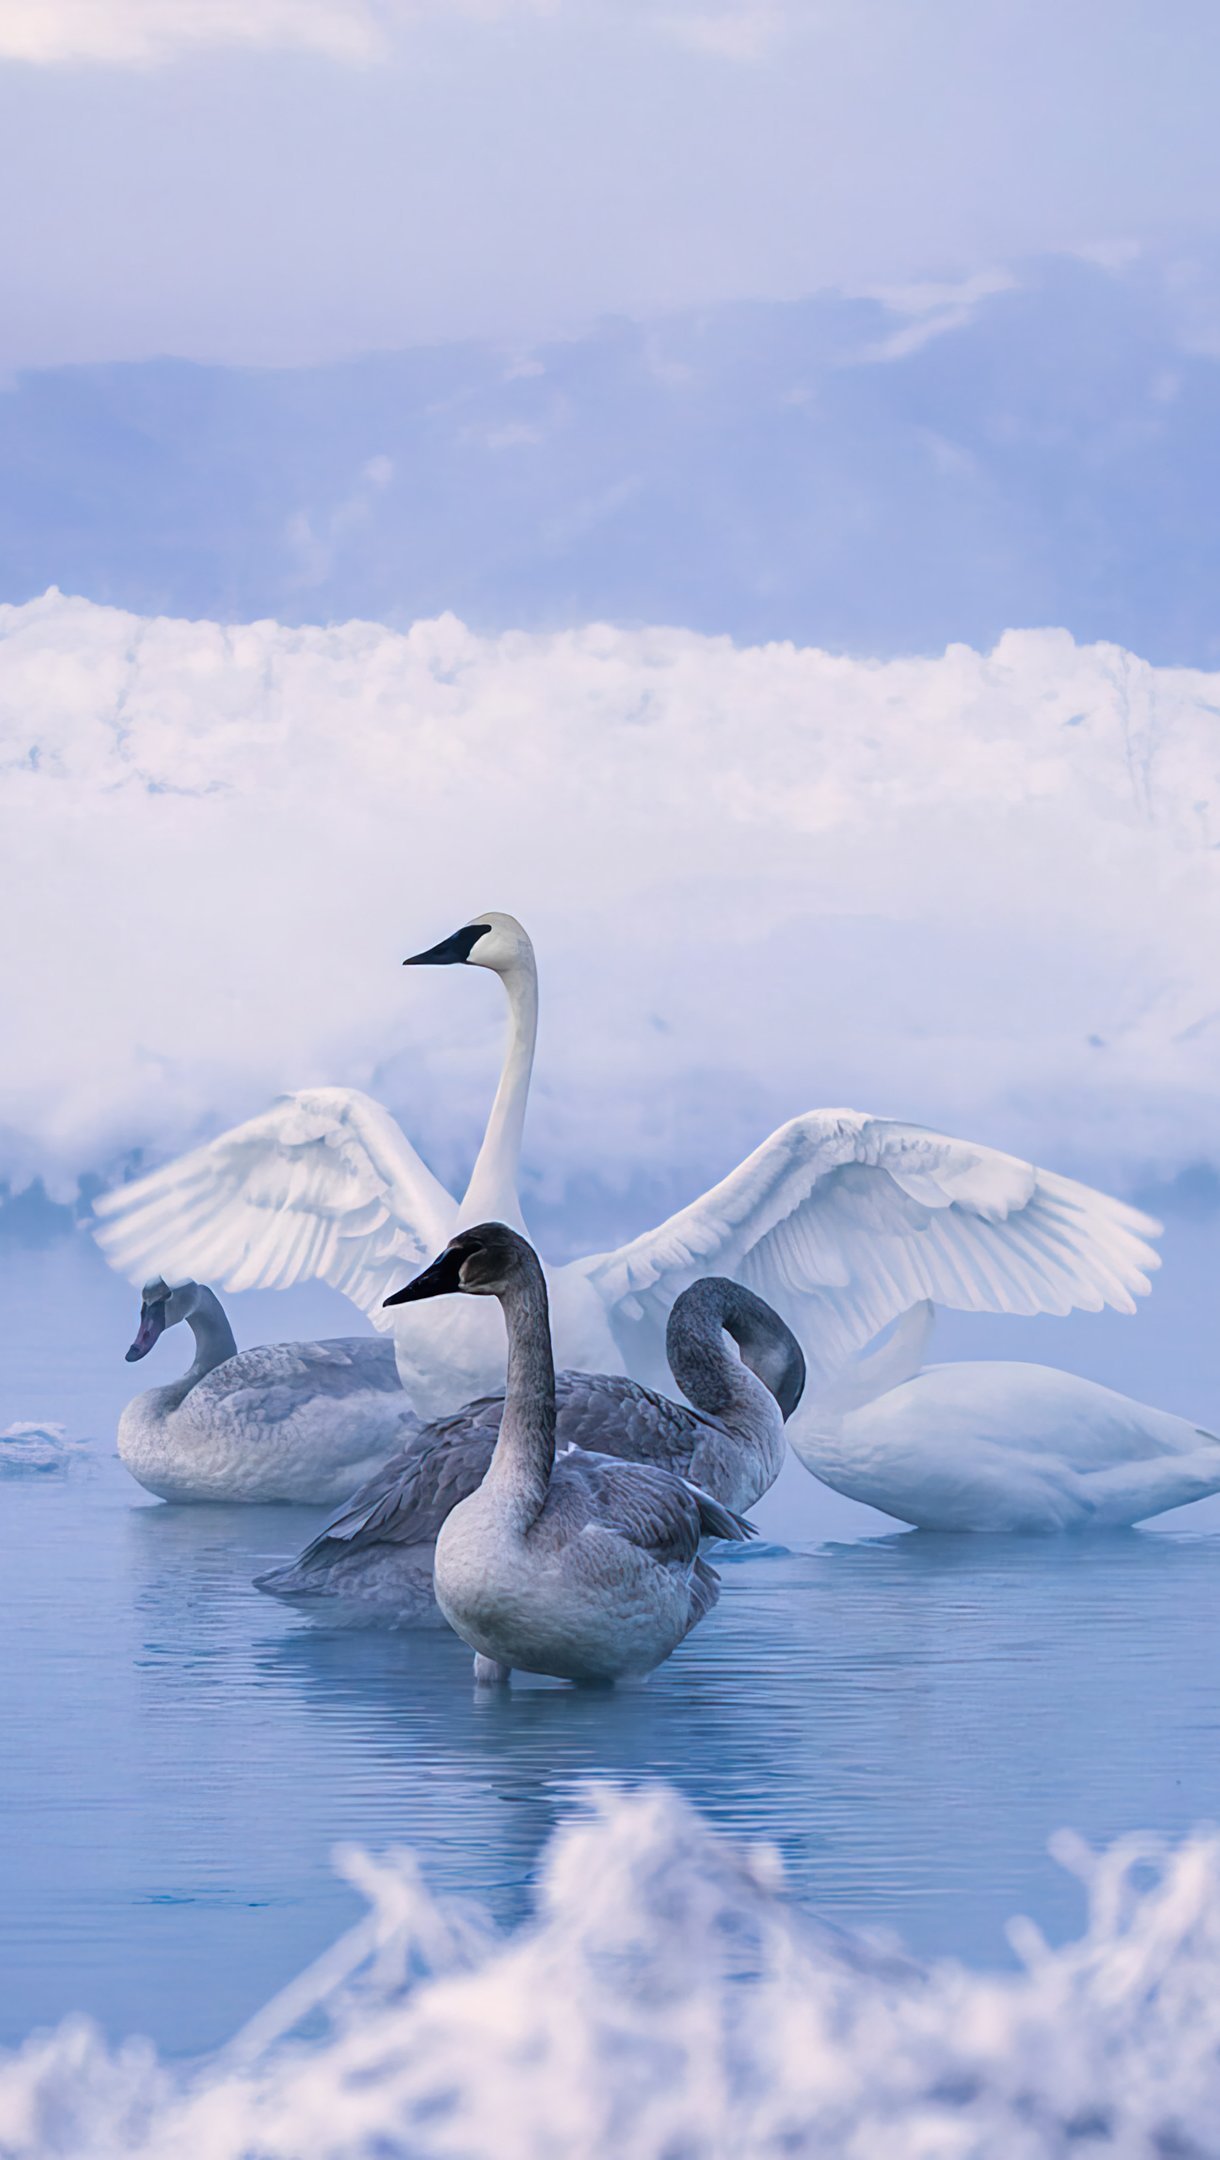 Fondos de pantalla Cisnes en lago congelado Vertical